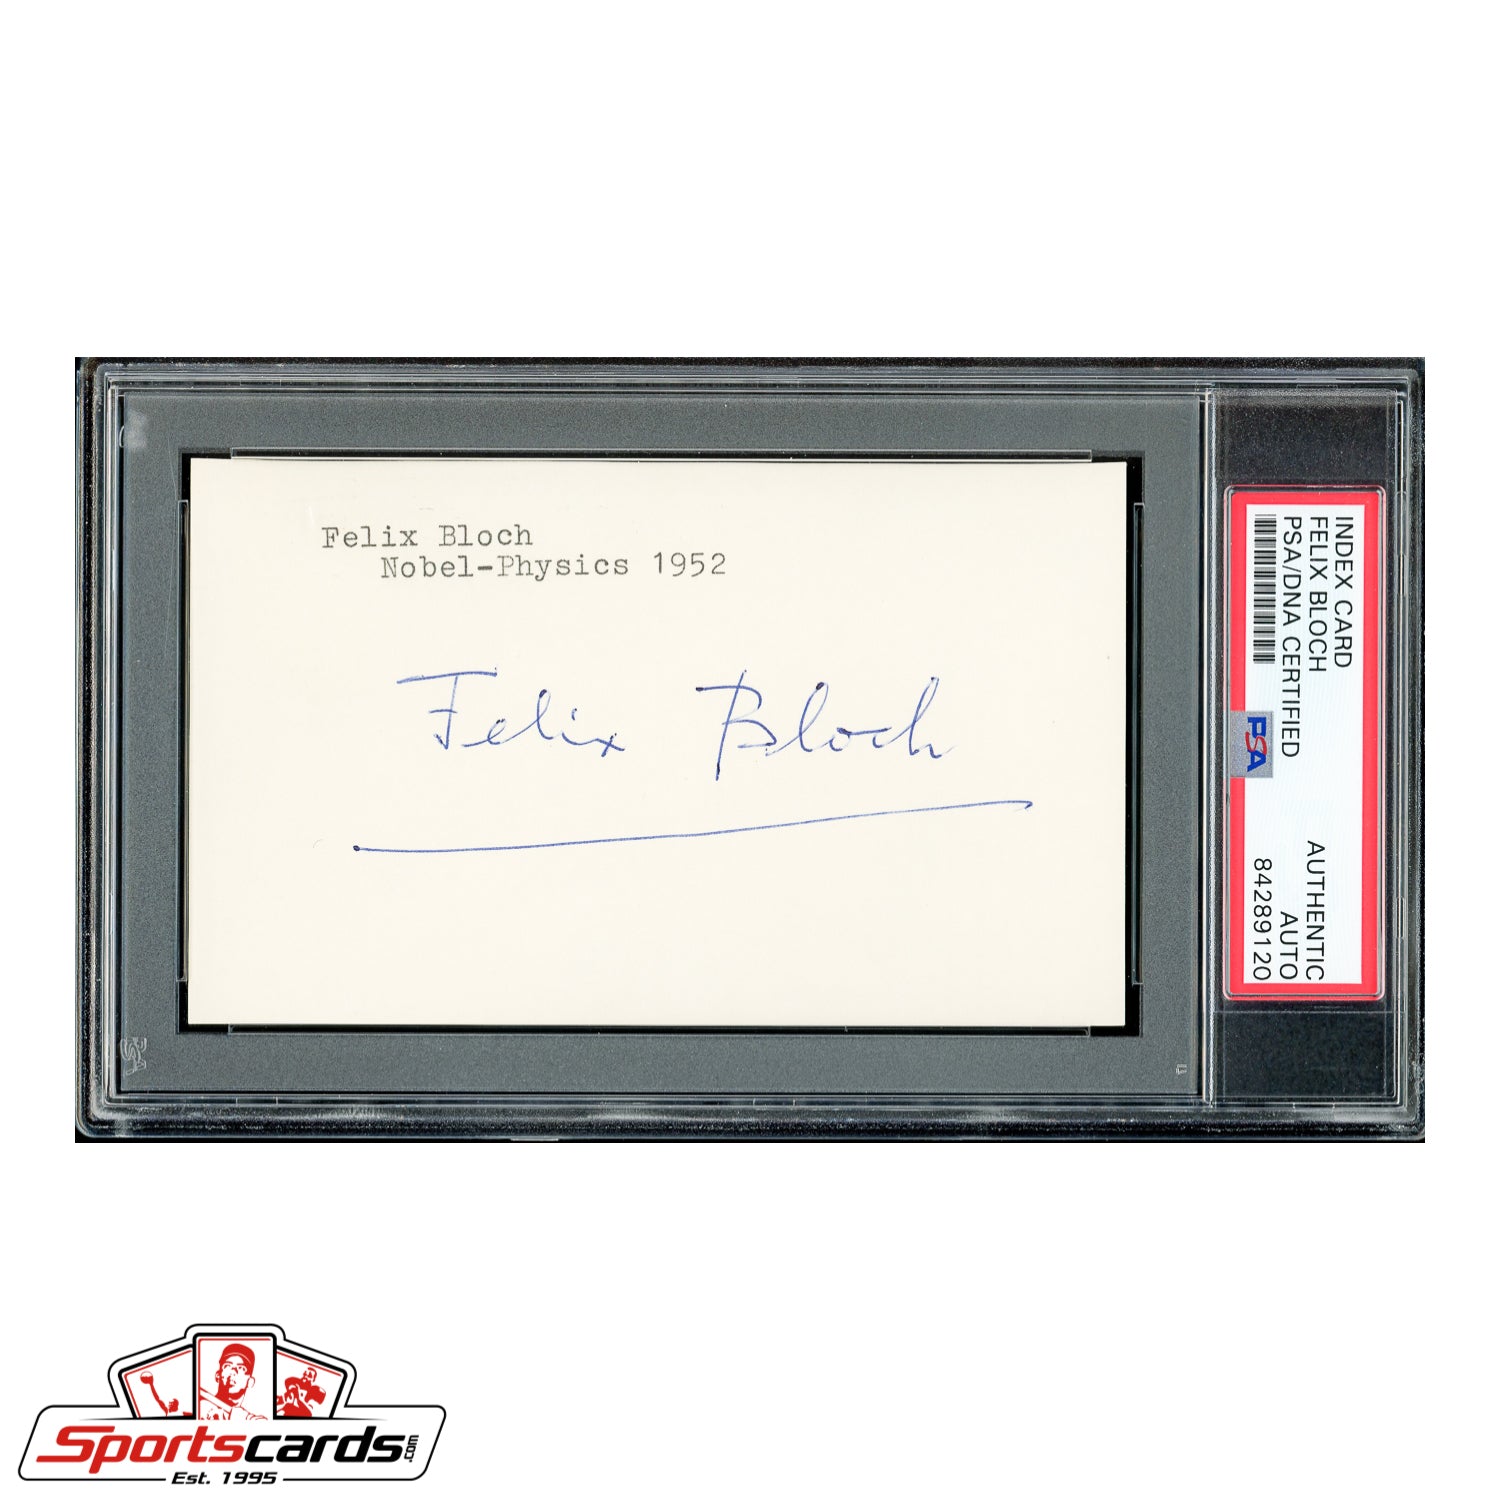 1952 Nobel Prize Winner Felix Bloch Signed Autographed 3x5 Index Card - PSA/DNA